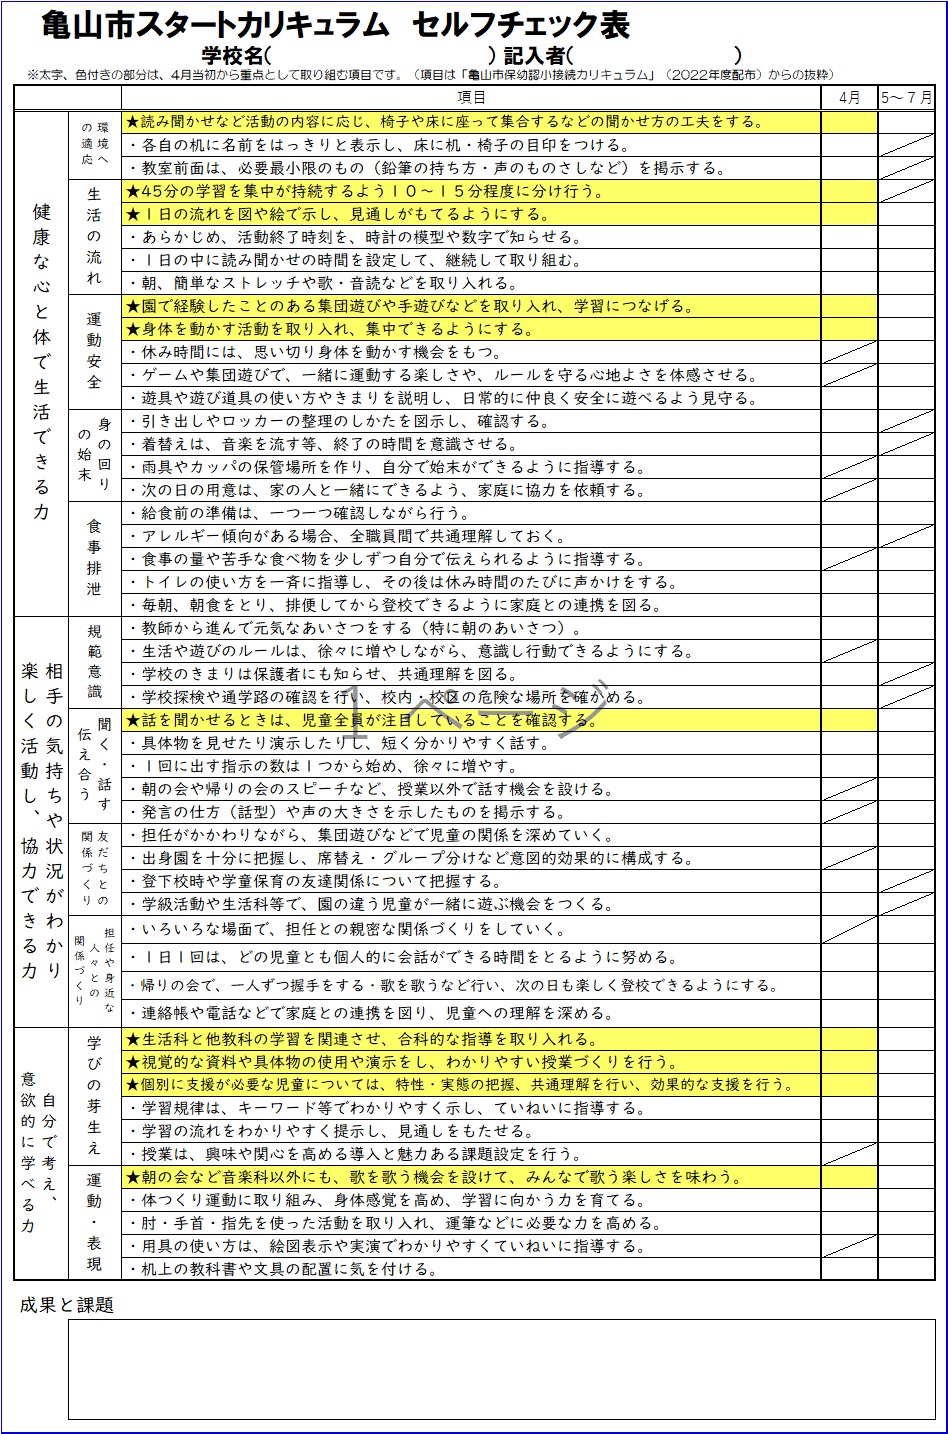 亀山市スタートカリキュラム　セルフチェック表